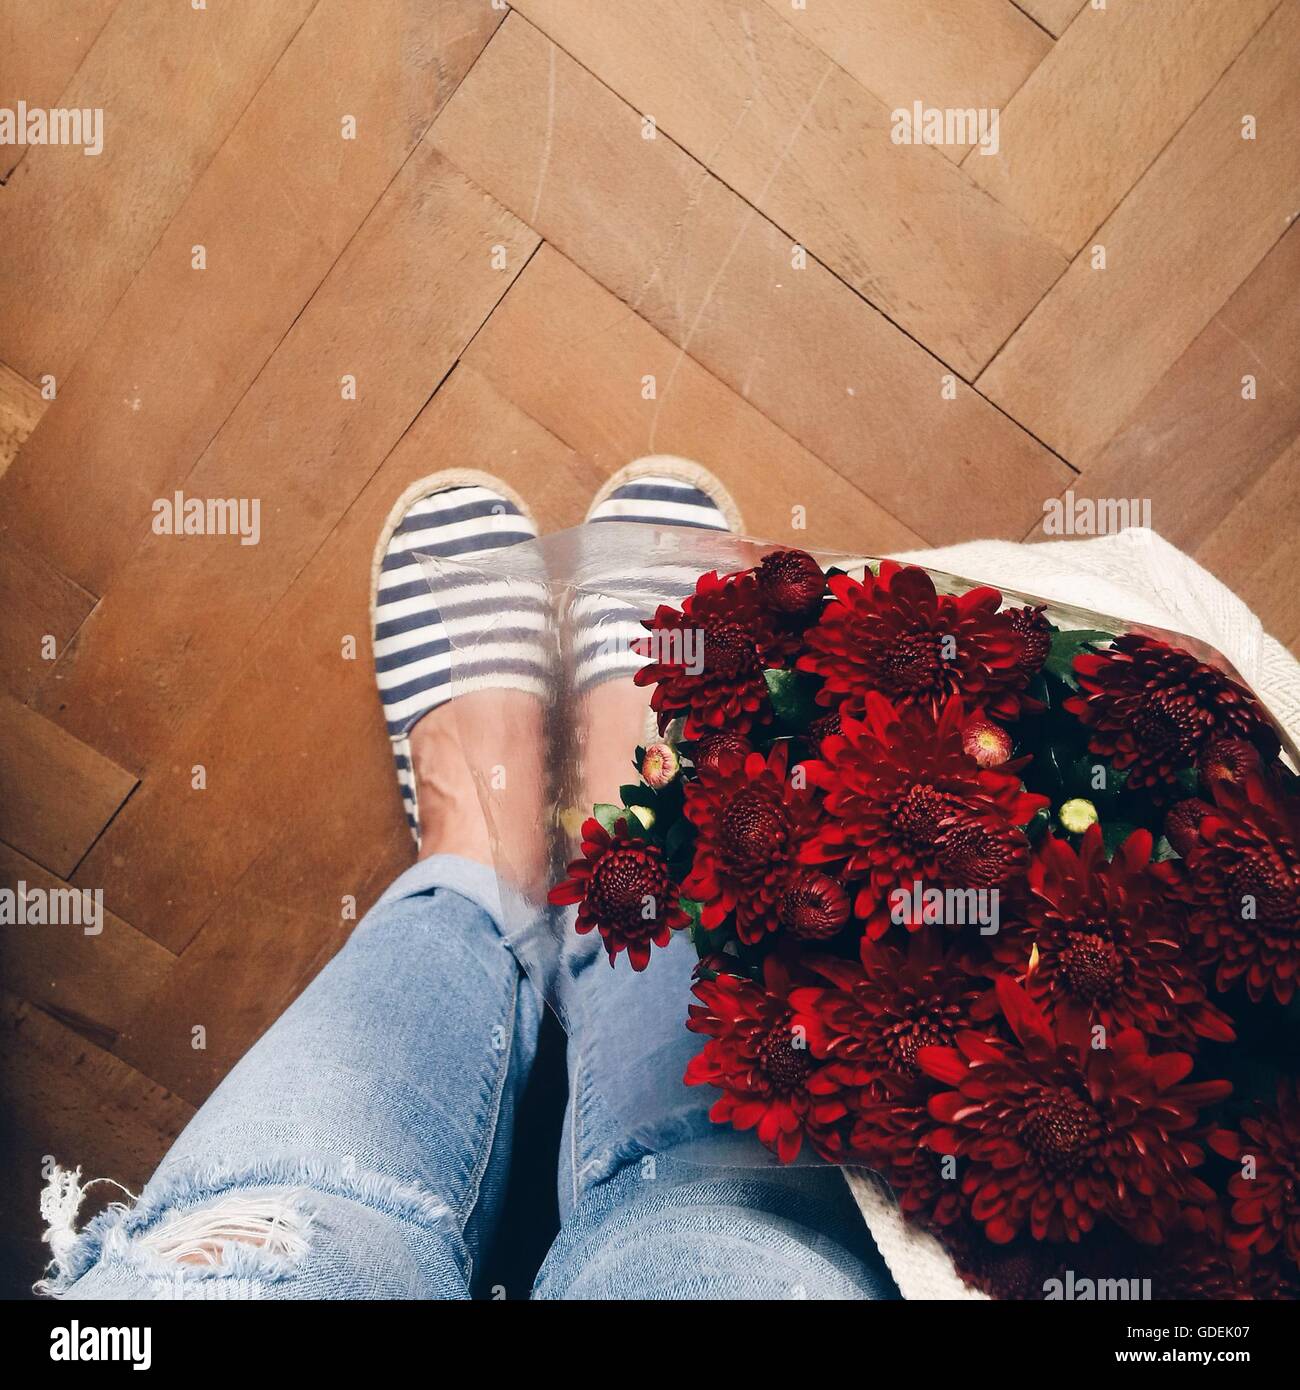 Les jambes de la femme et des fleurs dans un sac Banque D'Images